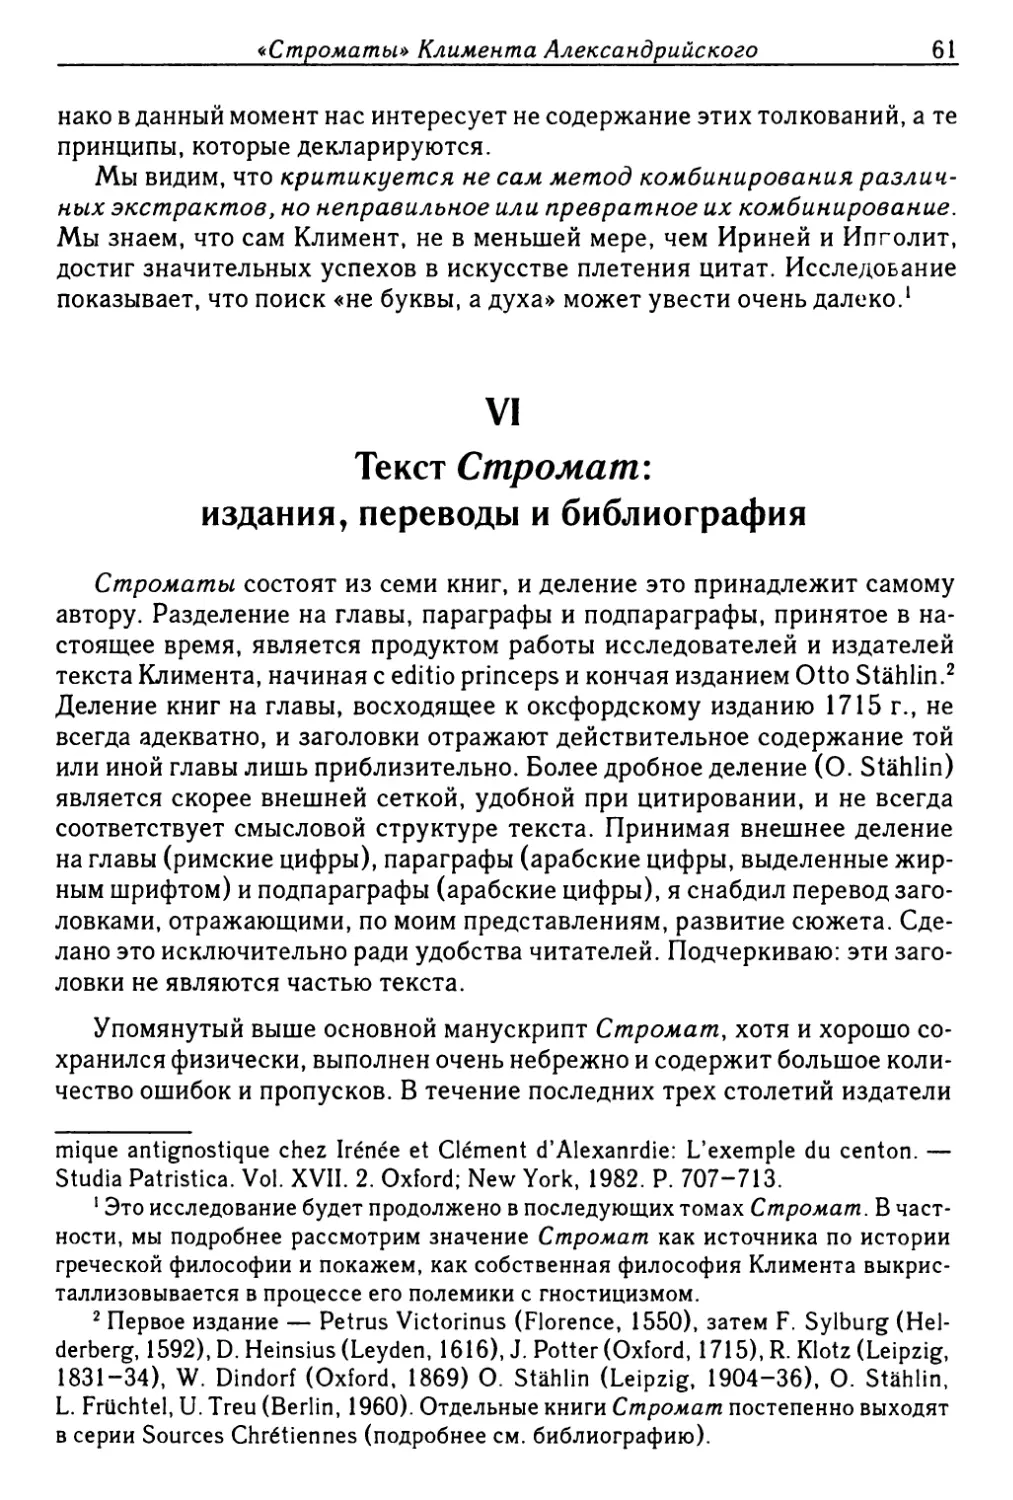 VI. Текст Стромат: издания, переводы и библиография